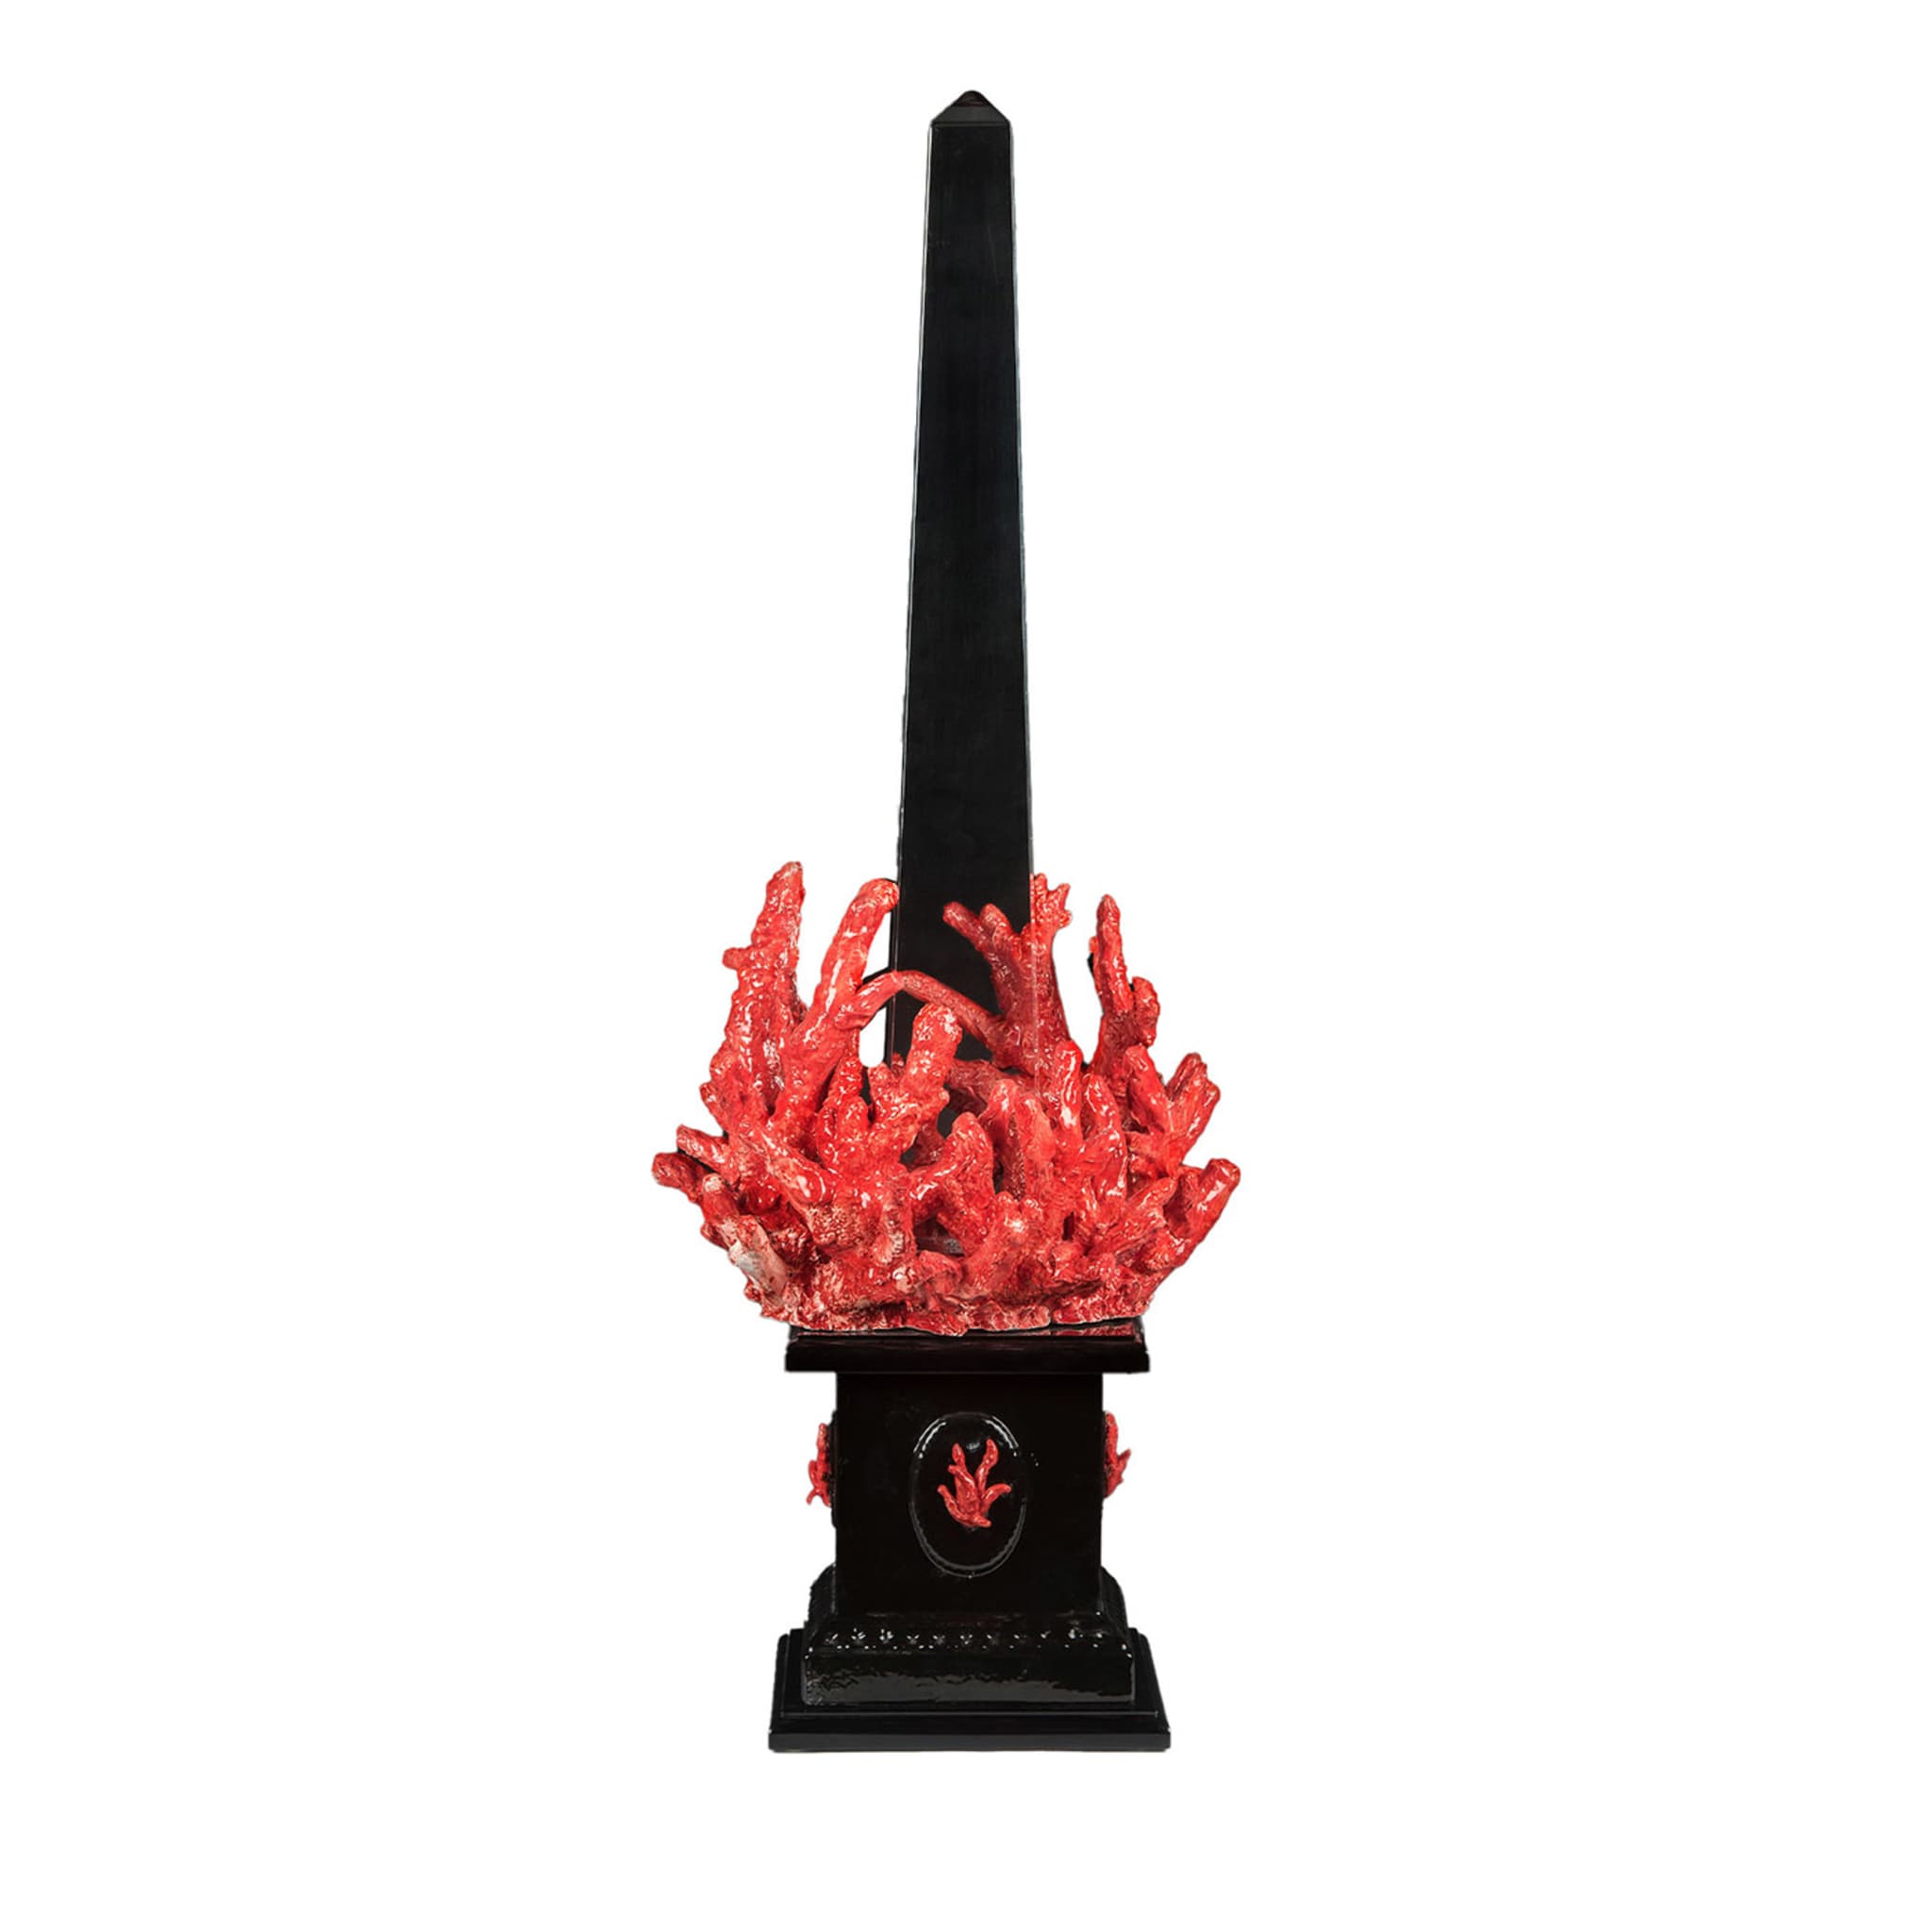 Corallo Black & Red Sculpture by Antonio Fullin - Main view